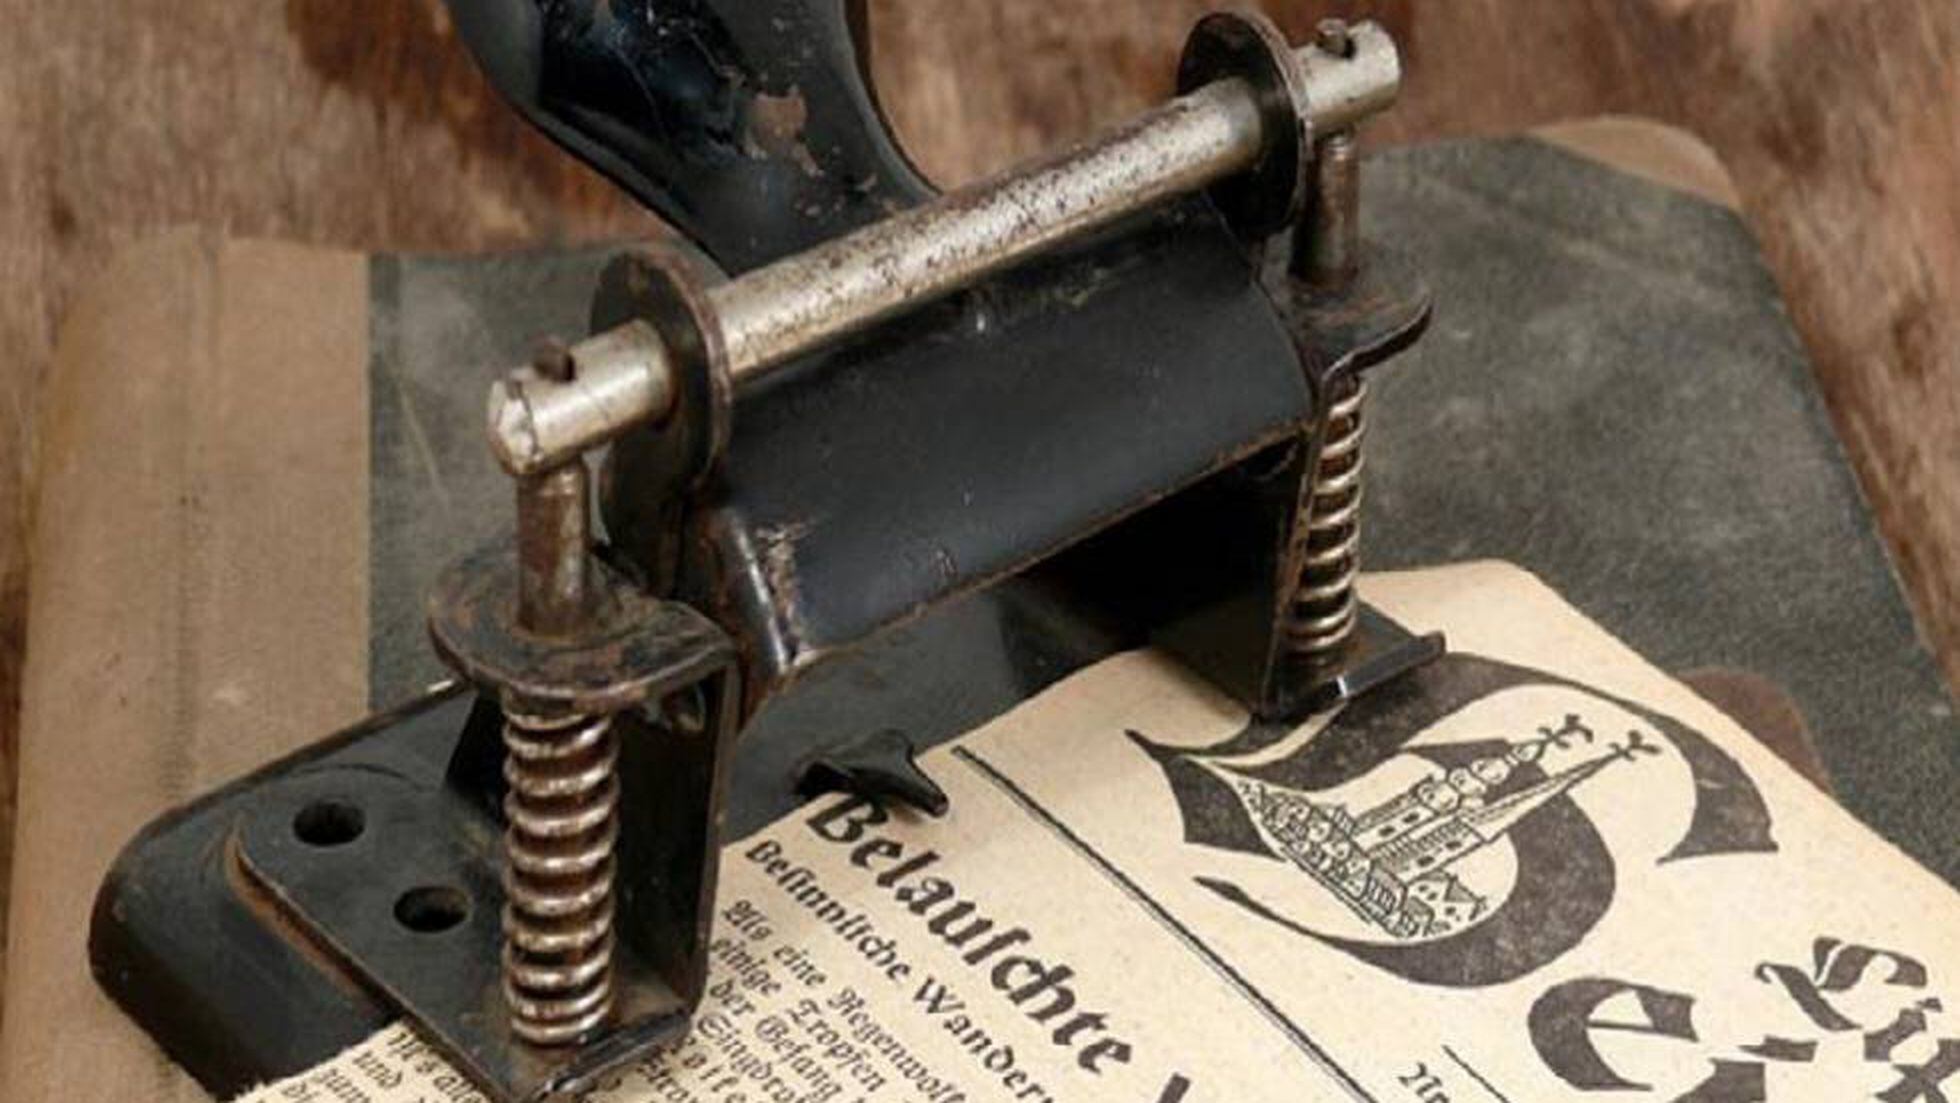 seda norte analizar Historia de la perforadora de papel, ingeniería alemana al servicio  doméstico | Noticias de actualidad | EL PAÍS